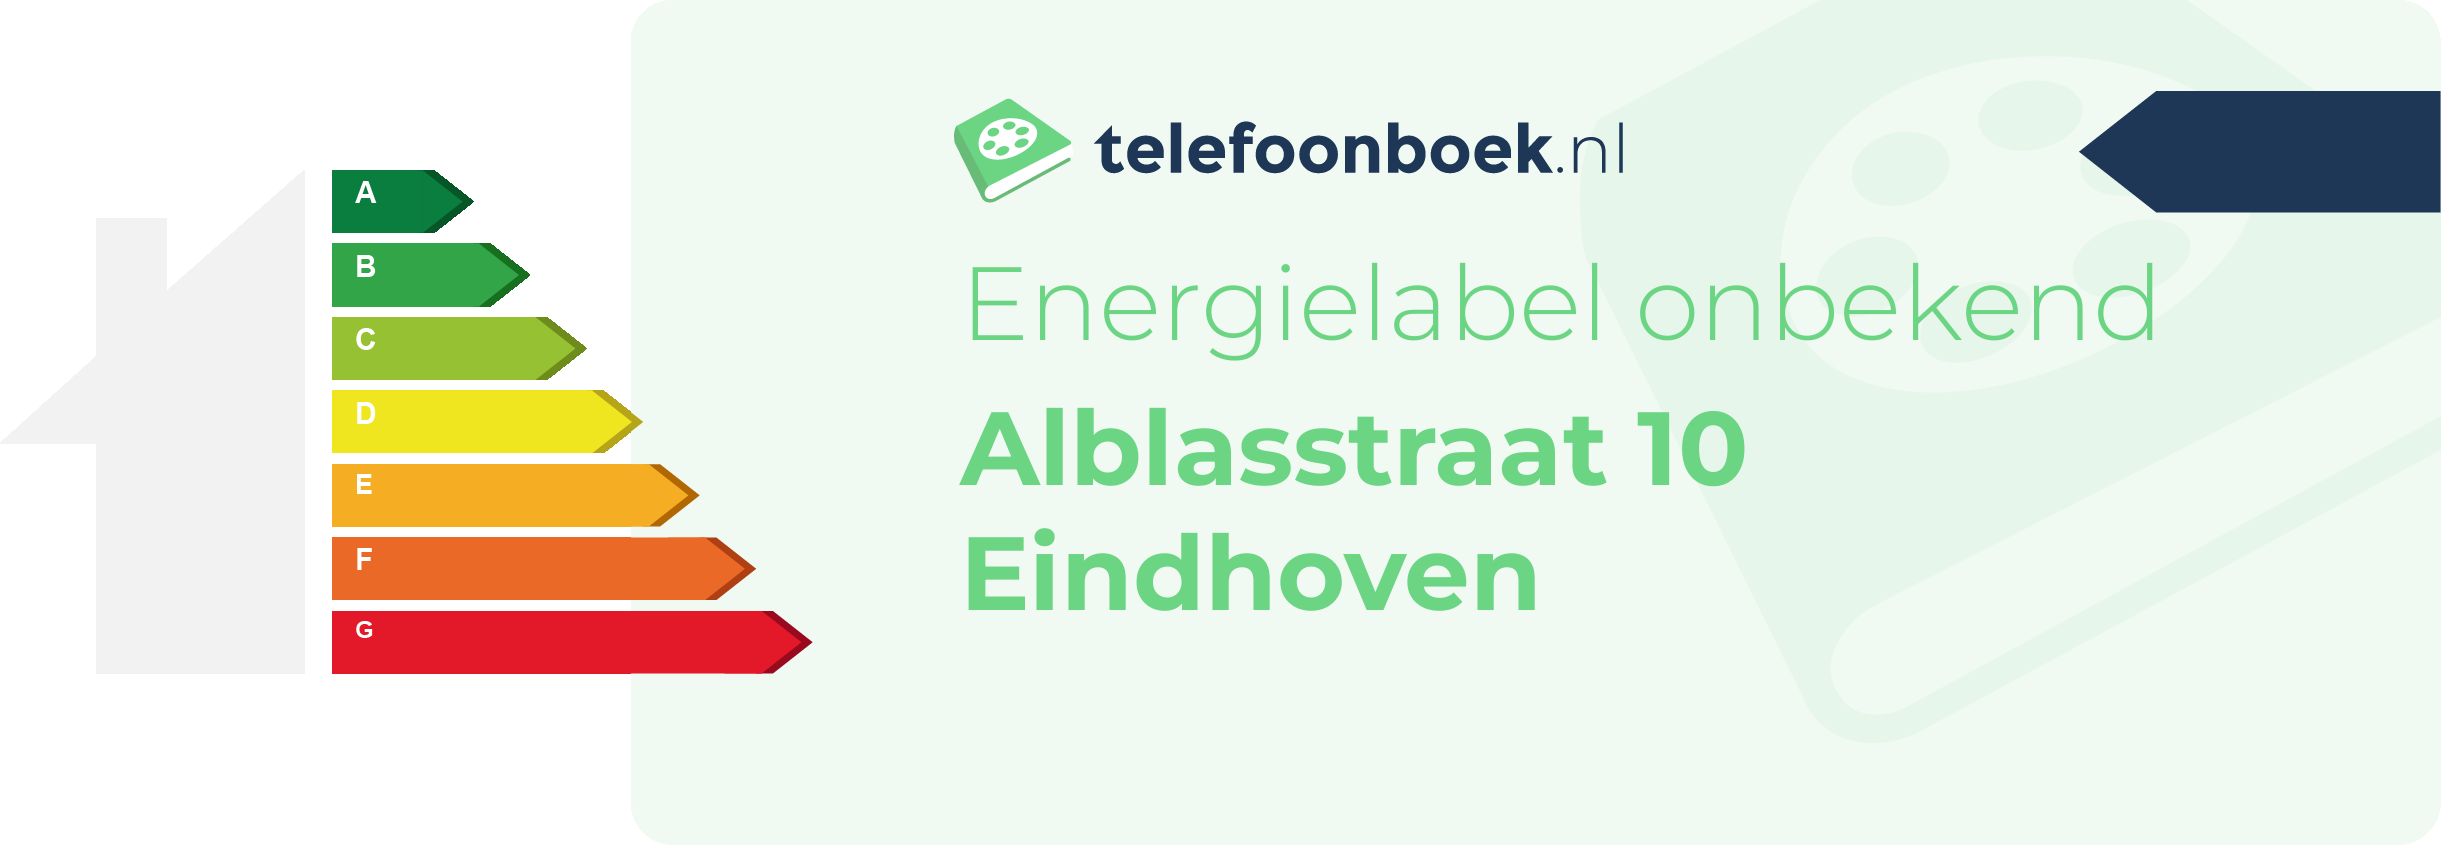 Energielabel Alblasstraat 10 Eindhoven